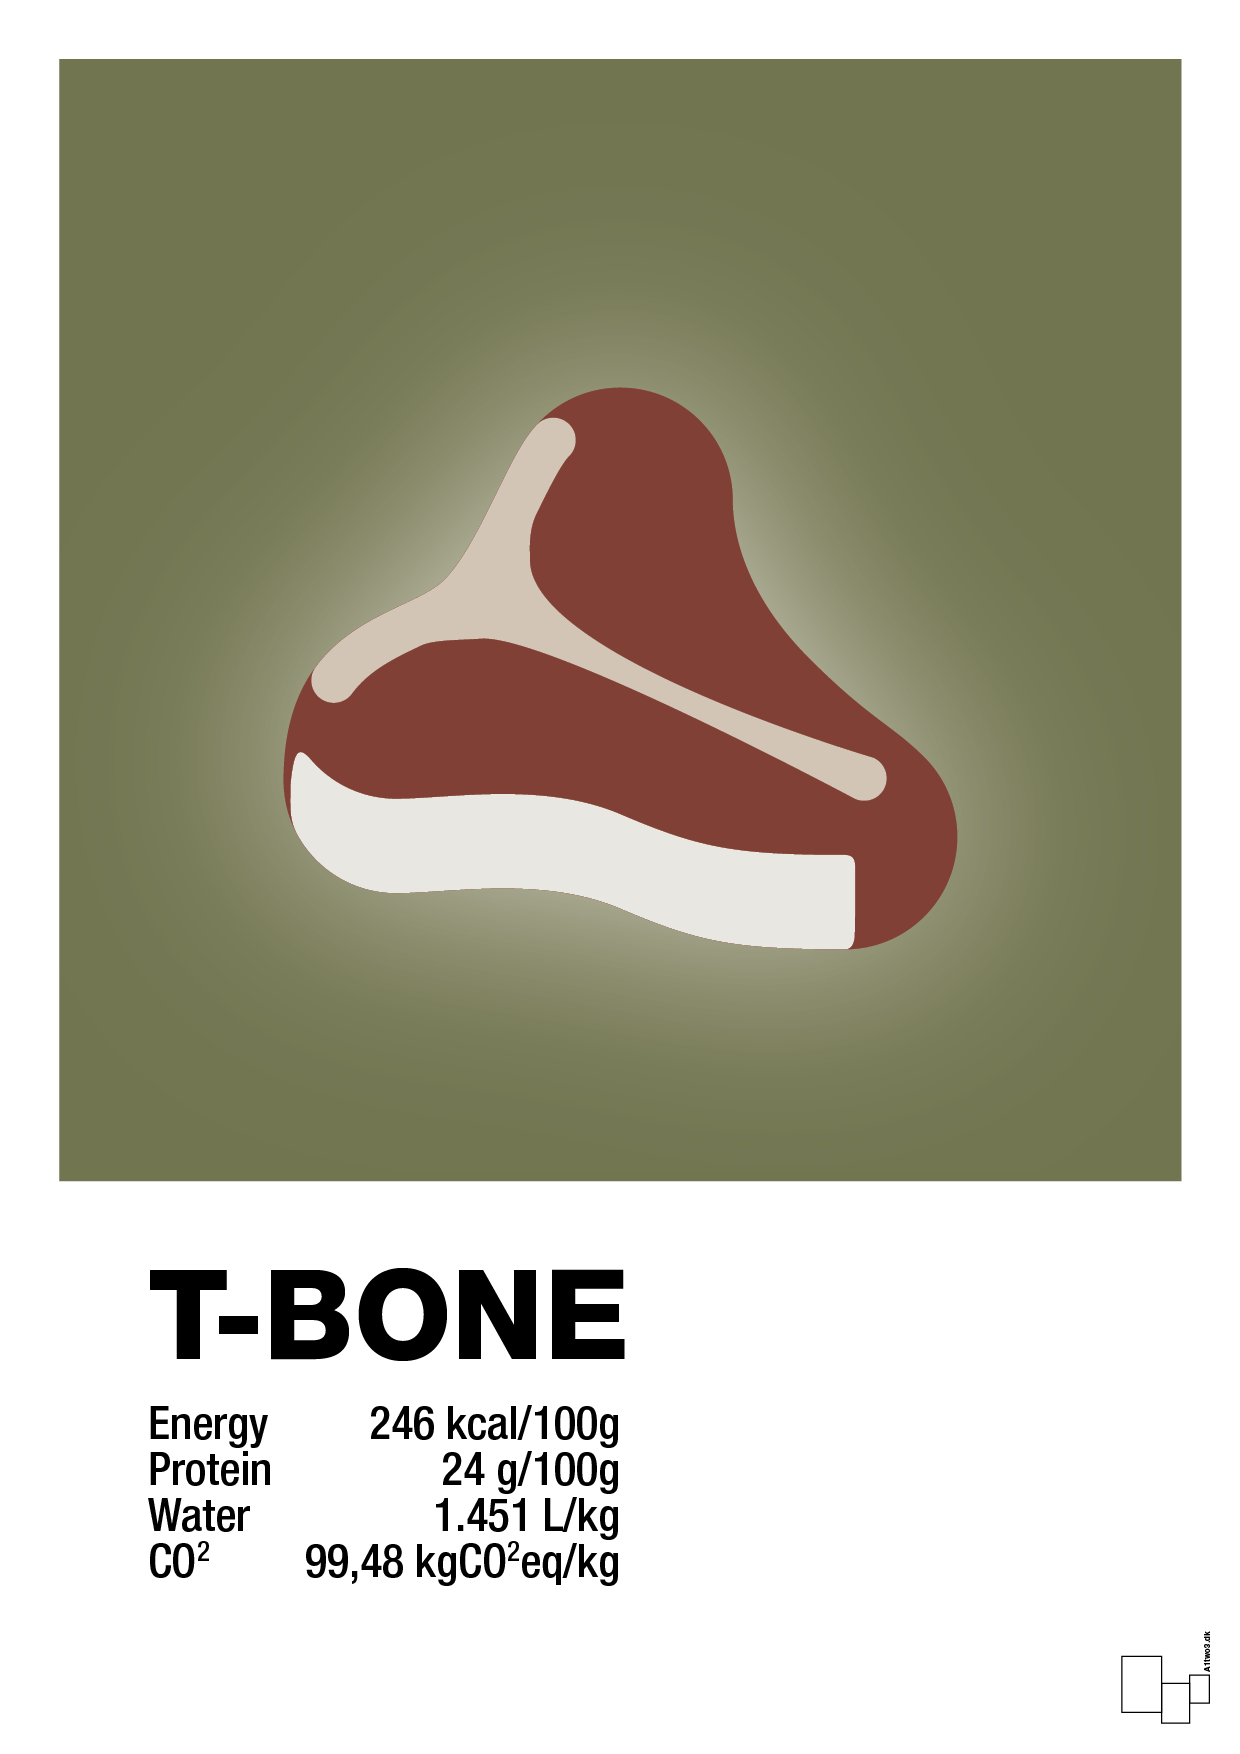 t-bone nutrition og miljø - Plakat med Mad & Drikke i Secret Meadow